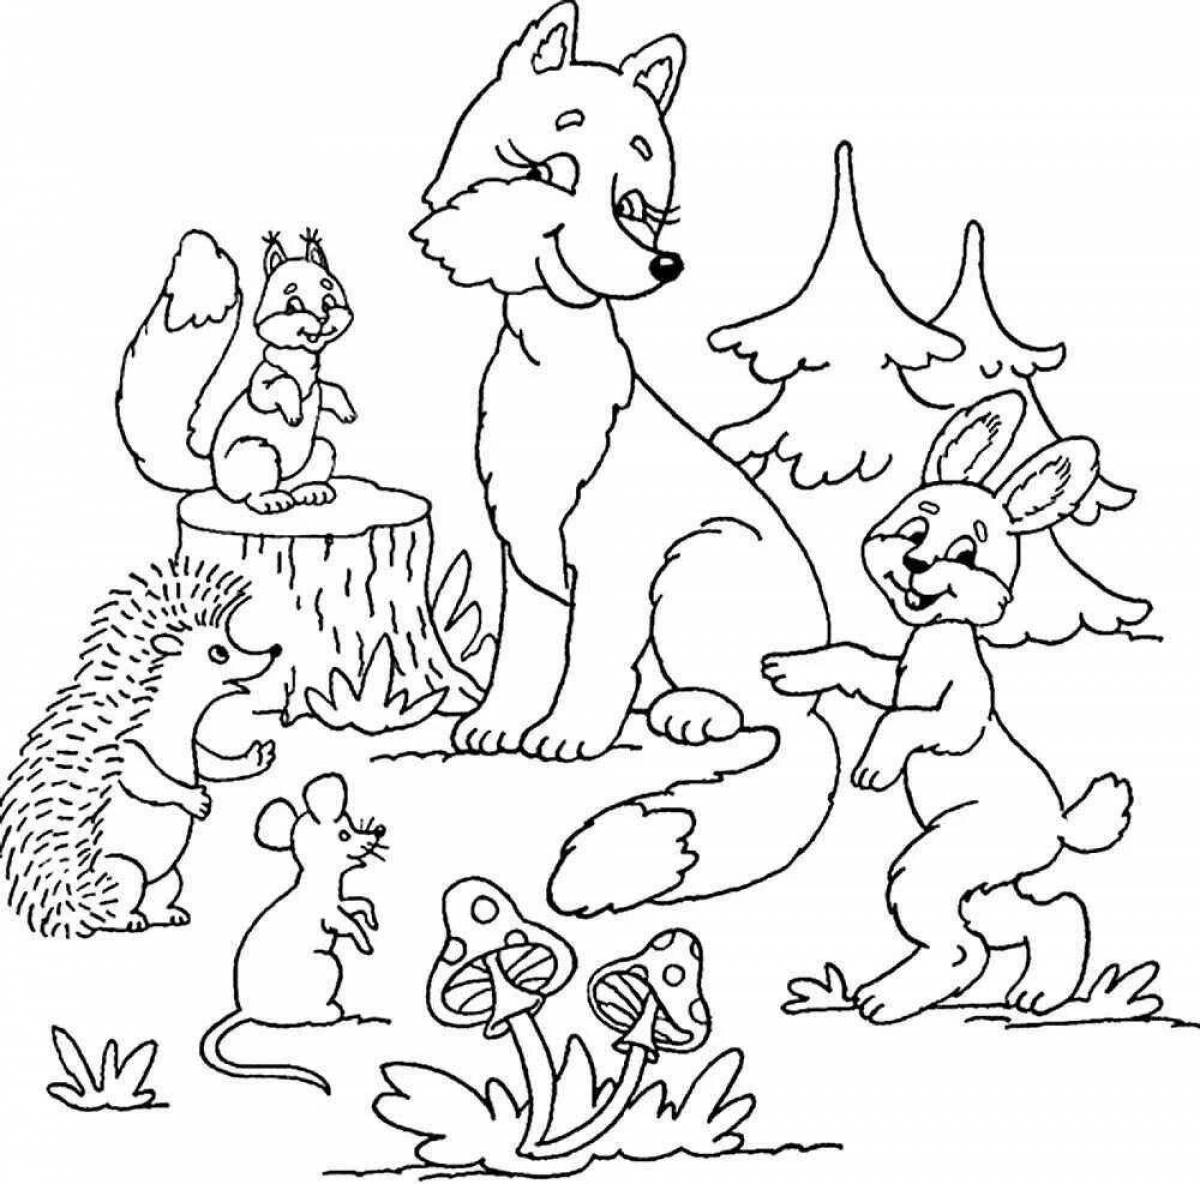 Веселая раскраска лесных животных для детей 4-5 лет